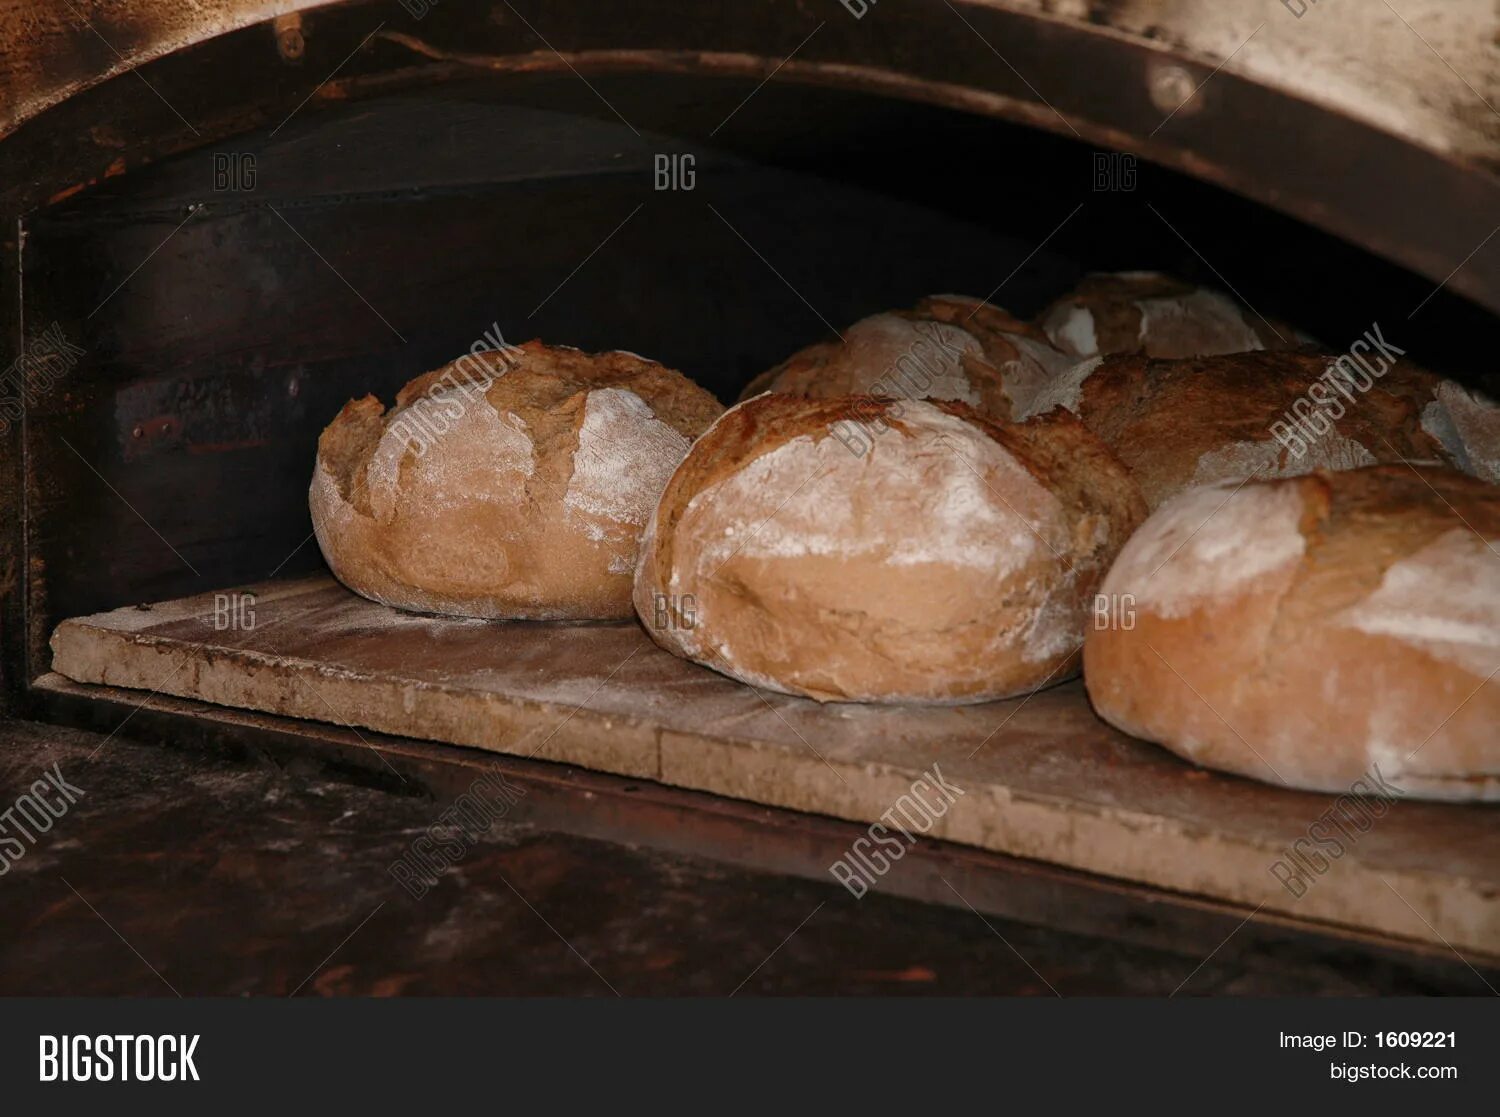 В риме умевший печь хлеб раб. Печь для хлебобулочных изделий. Хлеб в печи. Хлеб в русской печке. Подовая печь для хлеба.